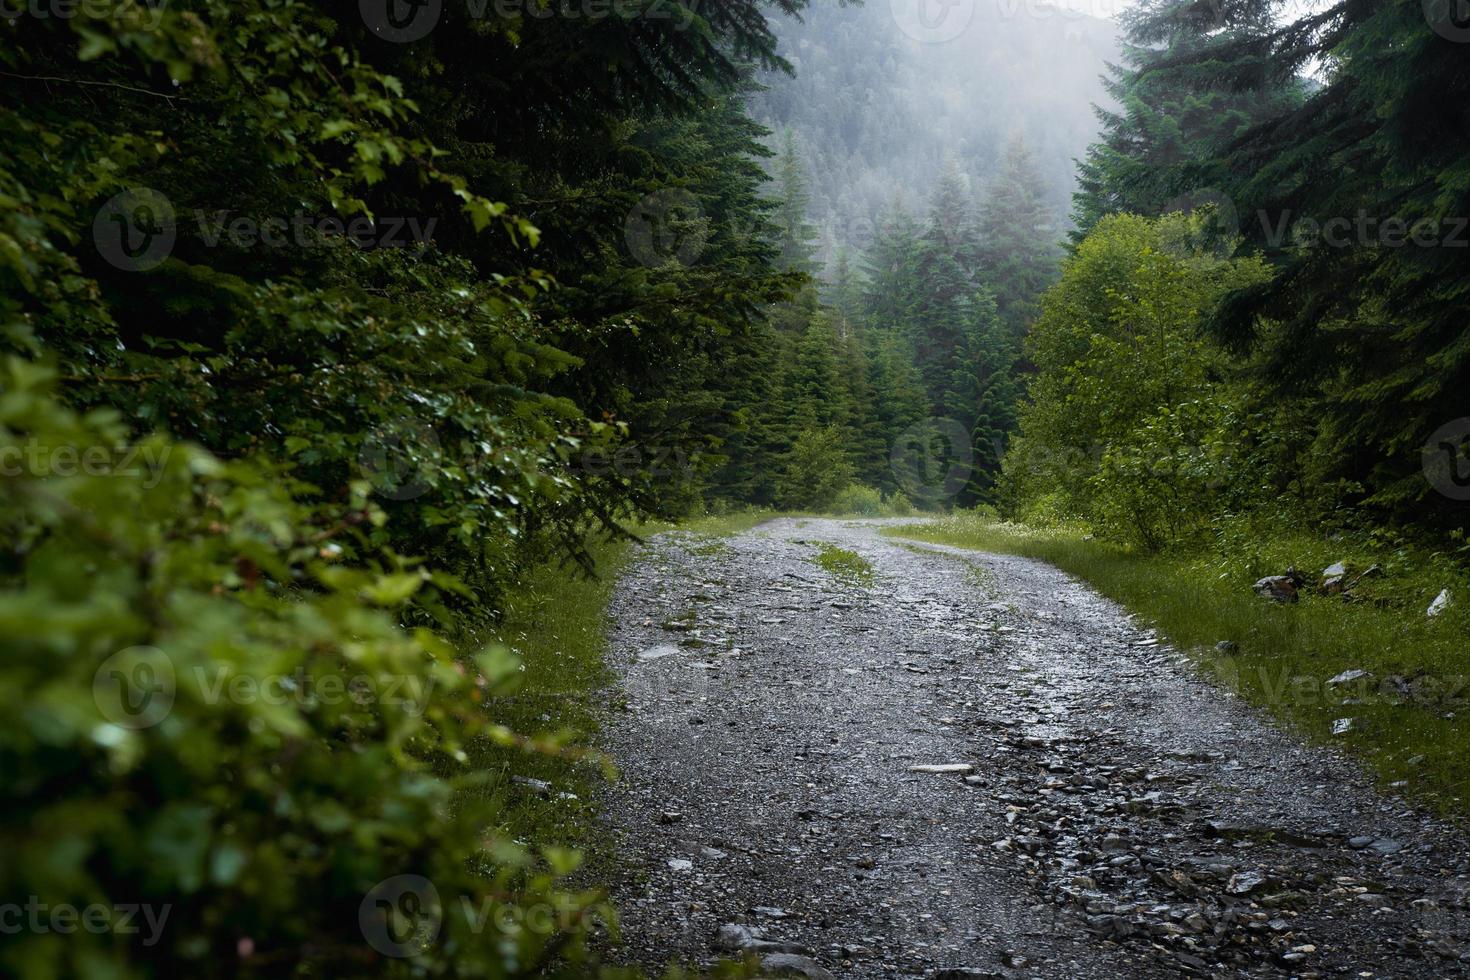 escena del sendero del bosque. bosque camino rocoso bosque en la niebla. paisaje con árboles, colorida niebla verde y azul. fondo de la naturaleza. bosque de niebla oscura foto